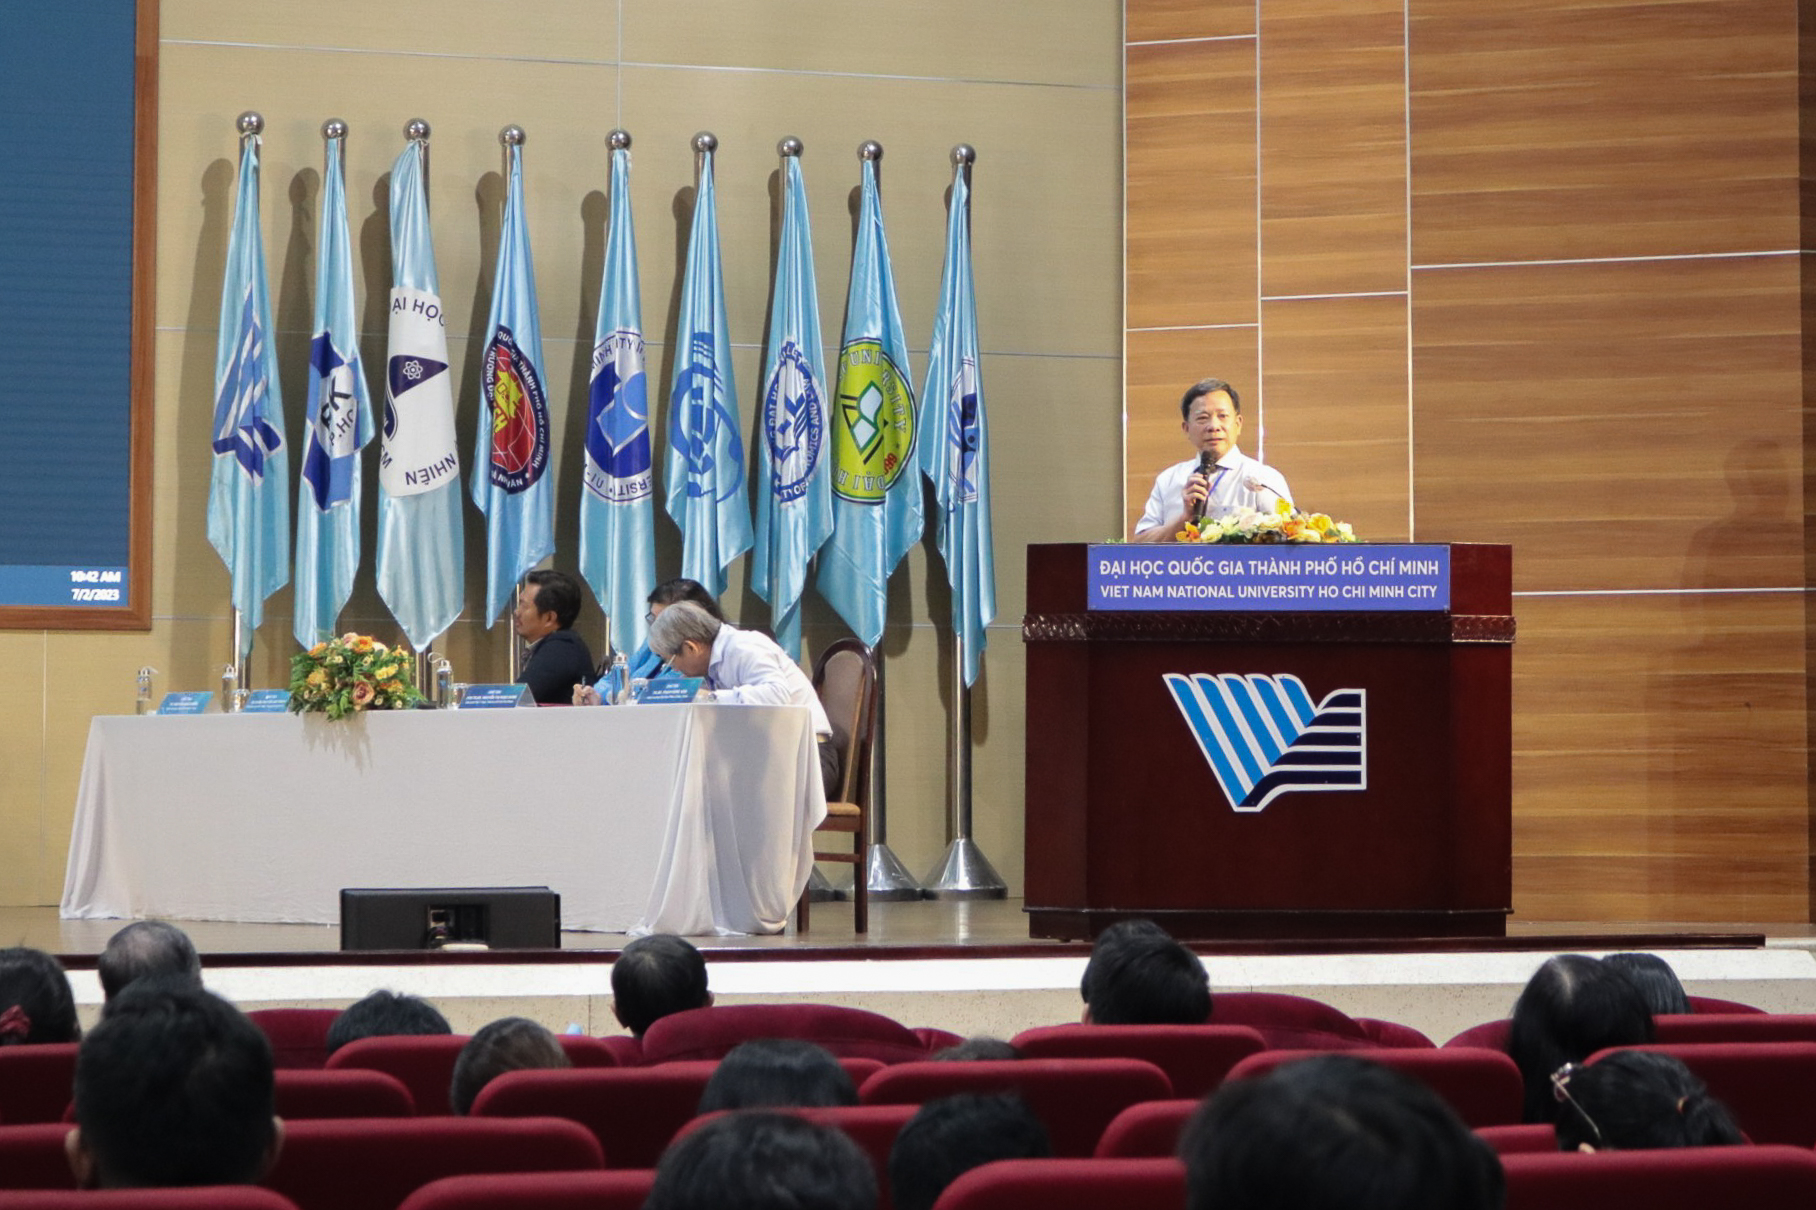 GS Nguyễn Sào Trung - Phó Chủ tịch Hội Y học TP.HCM - thảo luận về lợi ích của y học hệ trong tầm soát, phát hiện, chẩn đoán sớm bệnh tật.